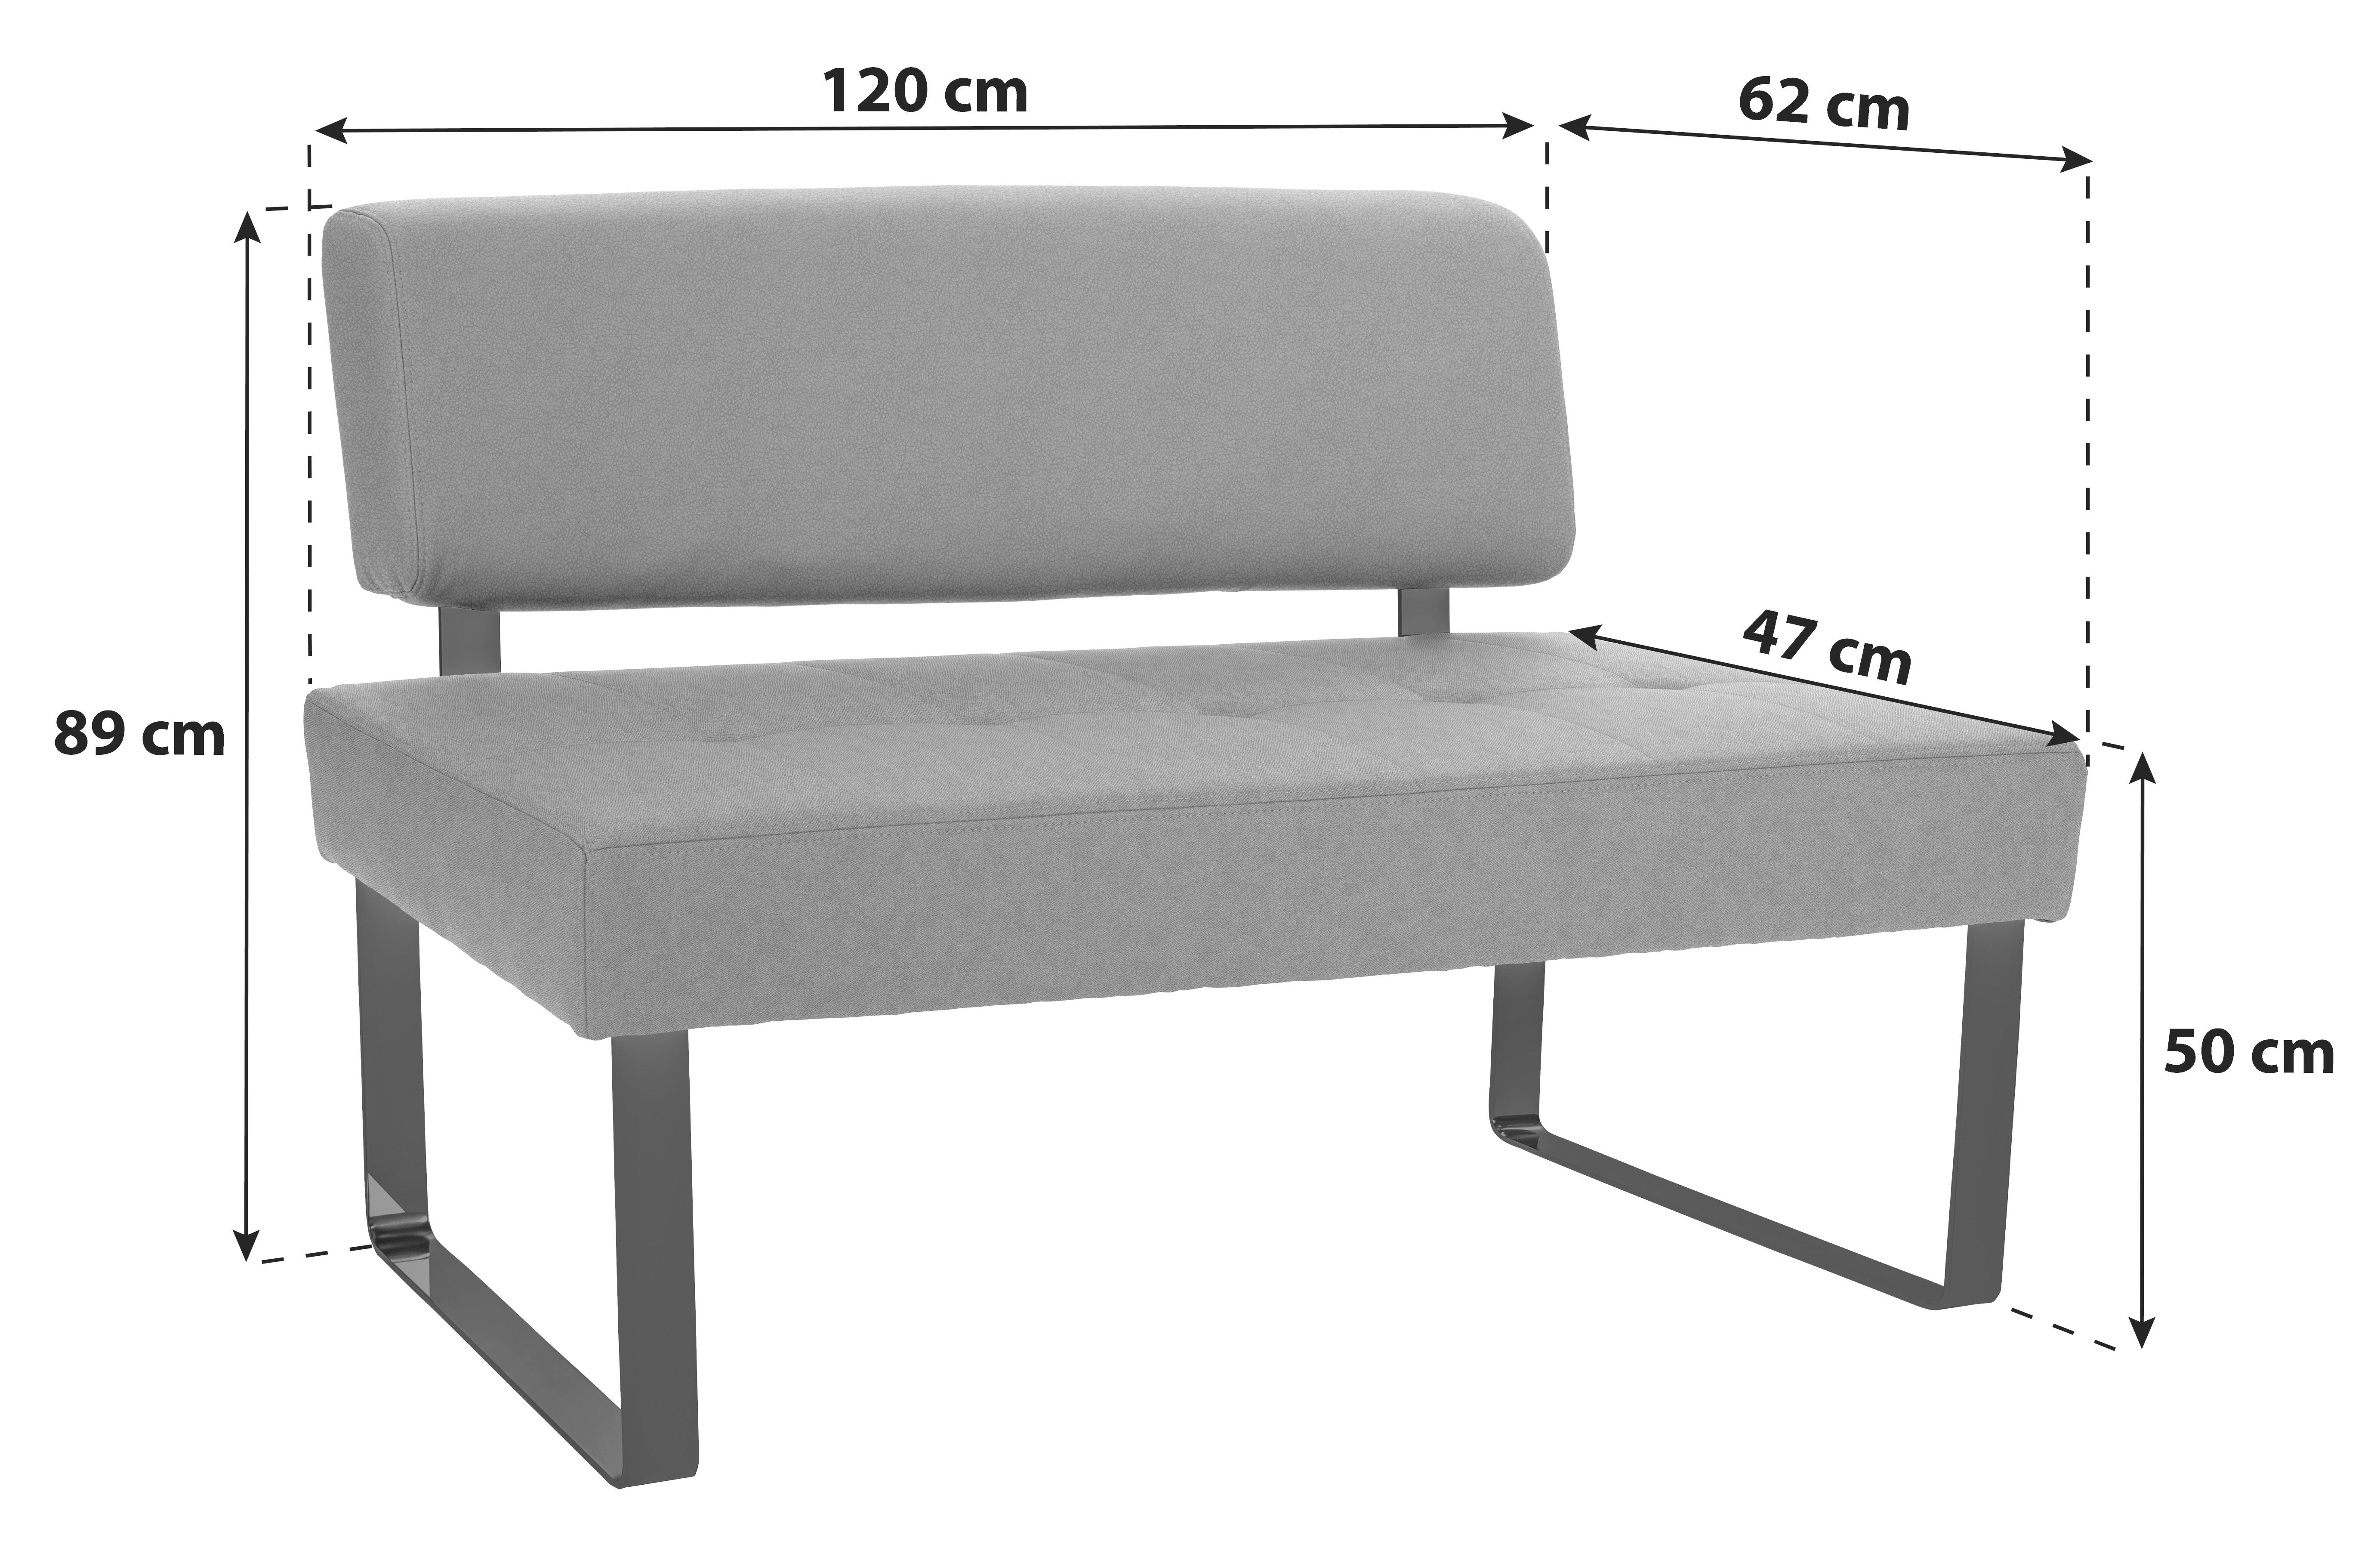 Sitzbank mit Lehne Gepolstert Grau/Silber Kakan B: 120 cm - Silberfarben/Schwarz, MODERN, Holz/Holzwerkstoff (120/89/62cm) - Luca Bessoni